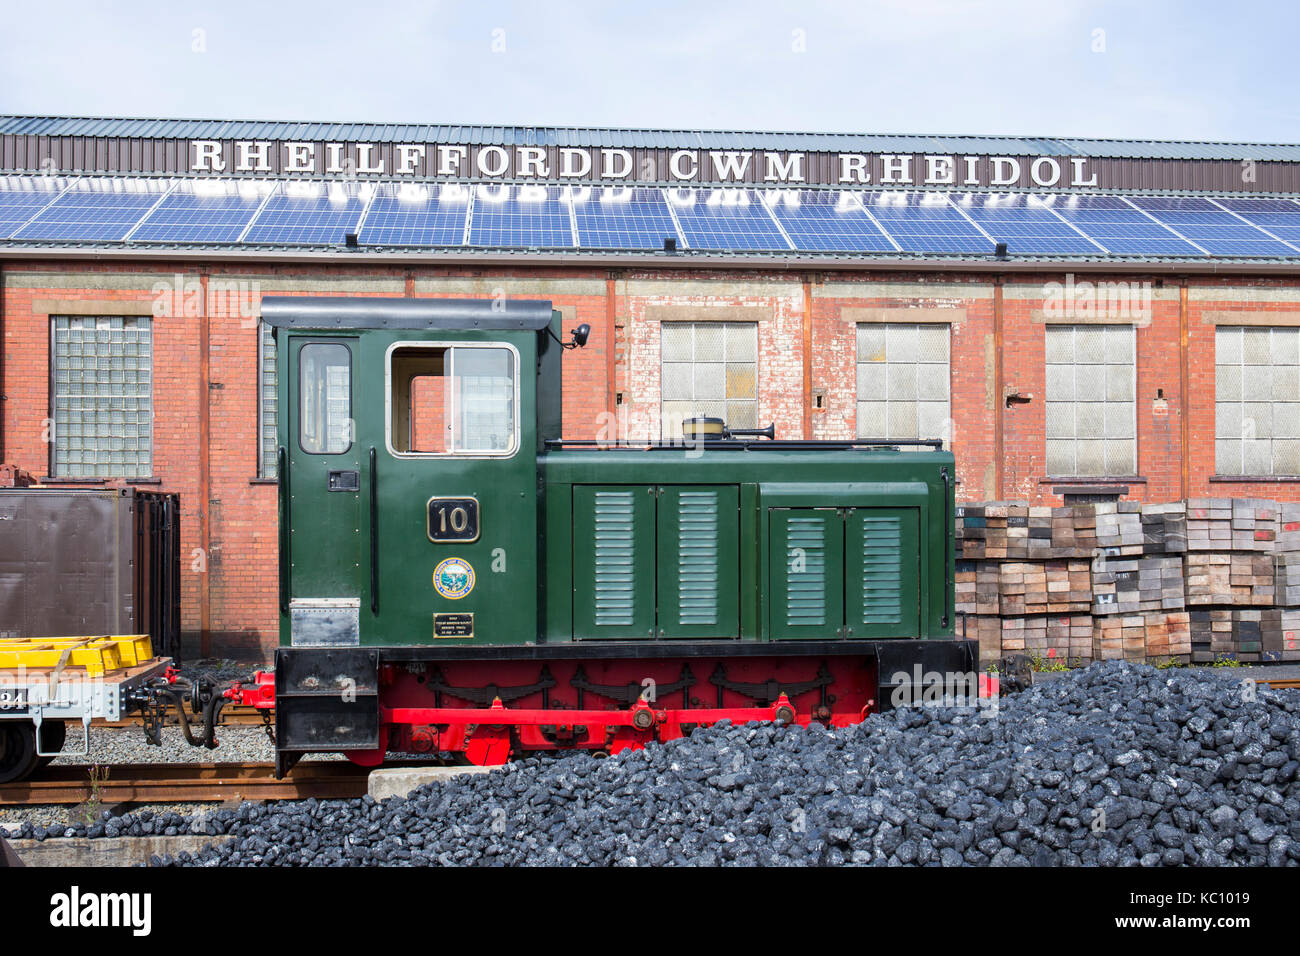 Baguley drewery locomotive diesel locomotive à la gare ferroviaire de rheidol de vale à aberystwyth ceredigion Pays de Galles UK Banque D'Images